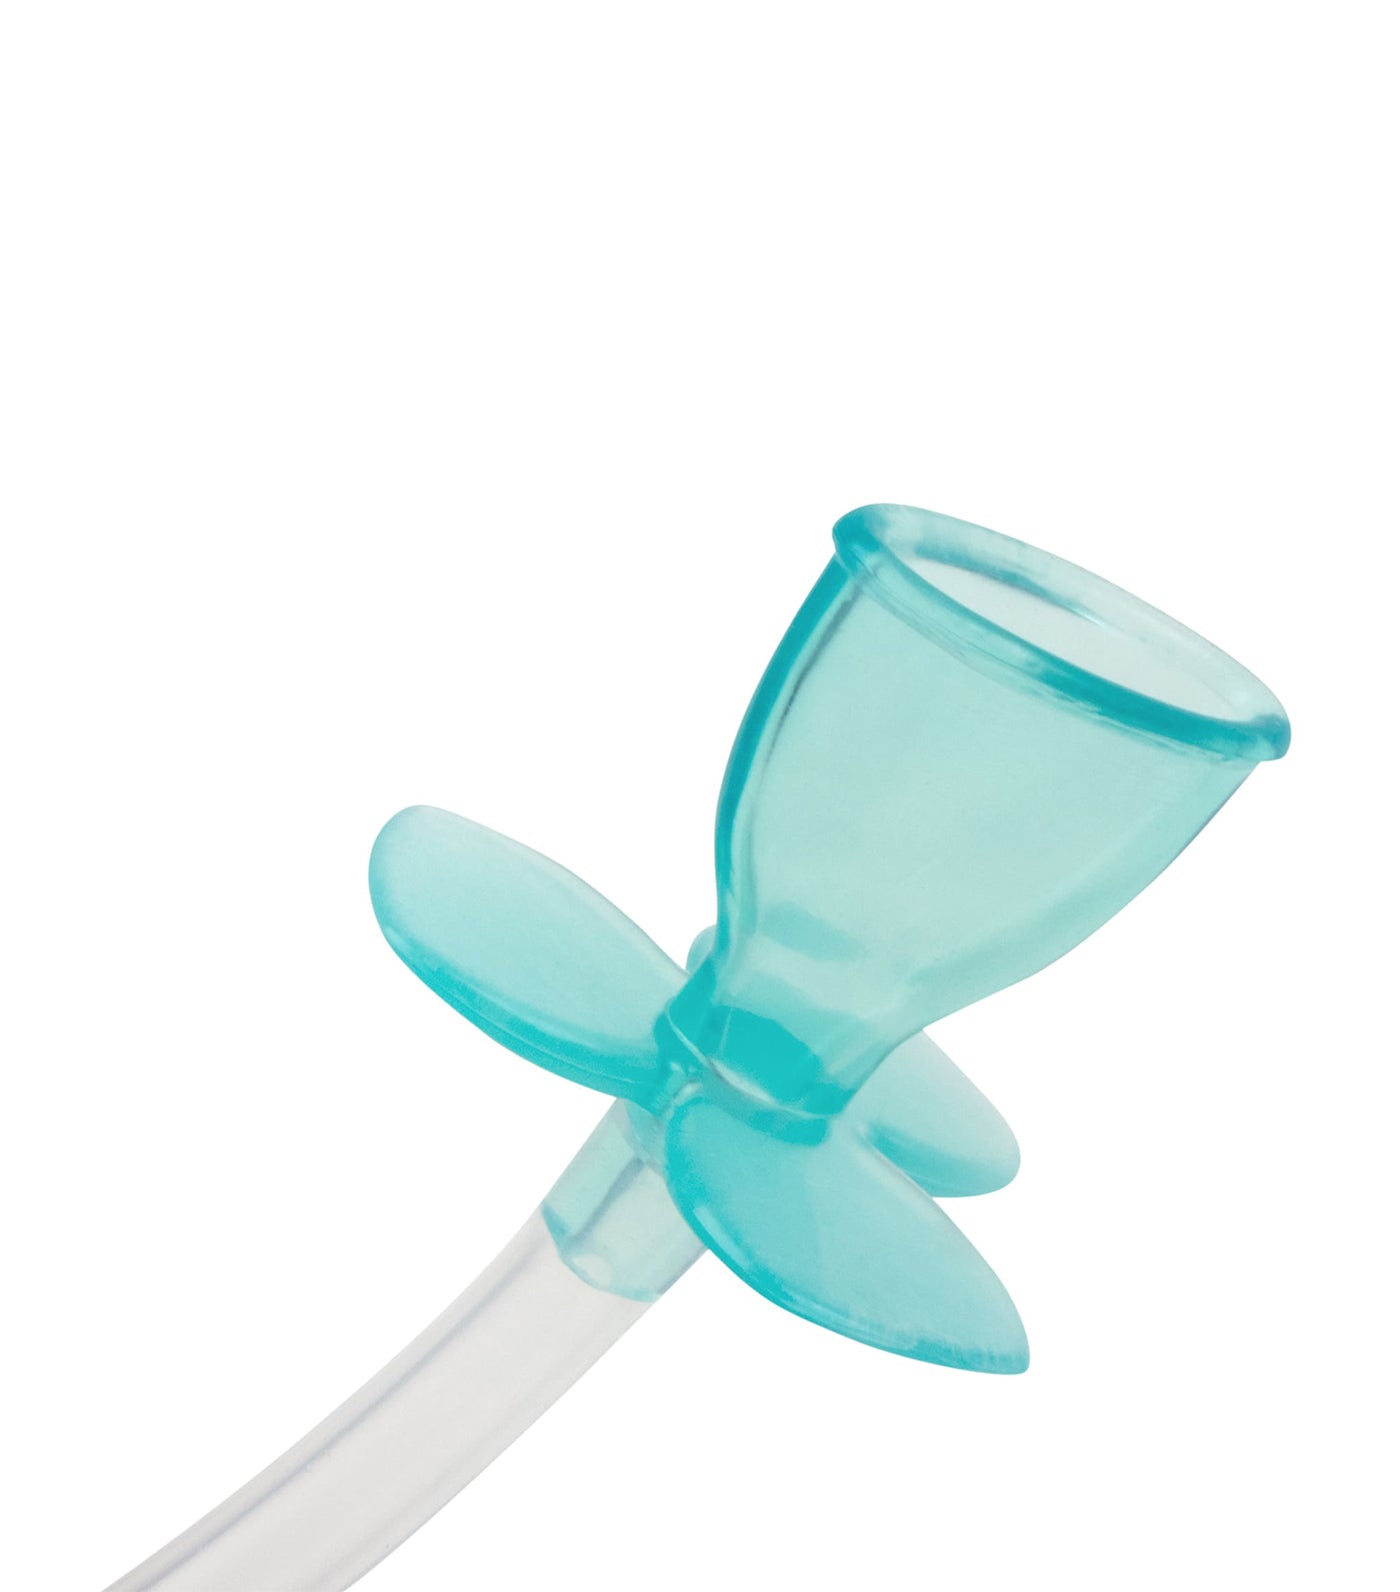 Nöze: Filter-Free Nasal Aspirator